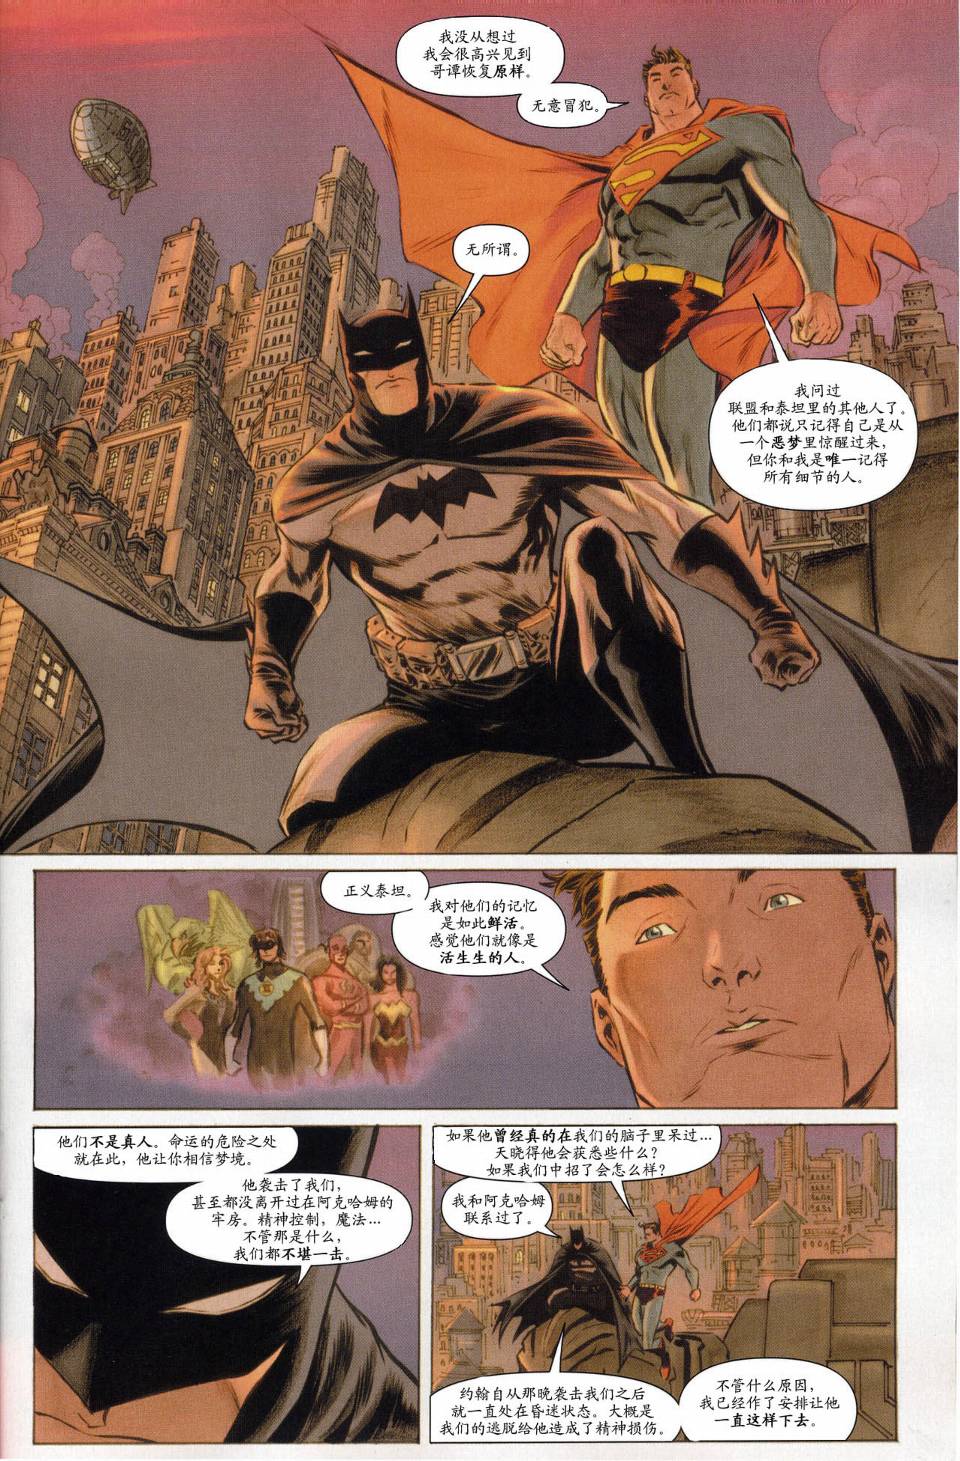 超人與蝙蝠俠v1 - 第61卷 - 1